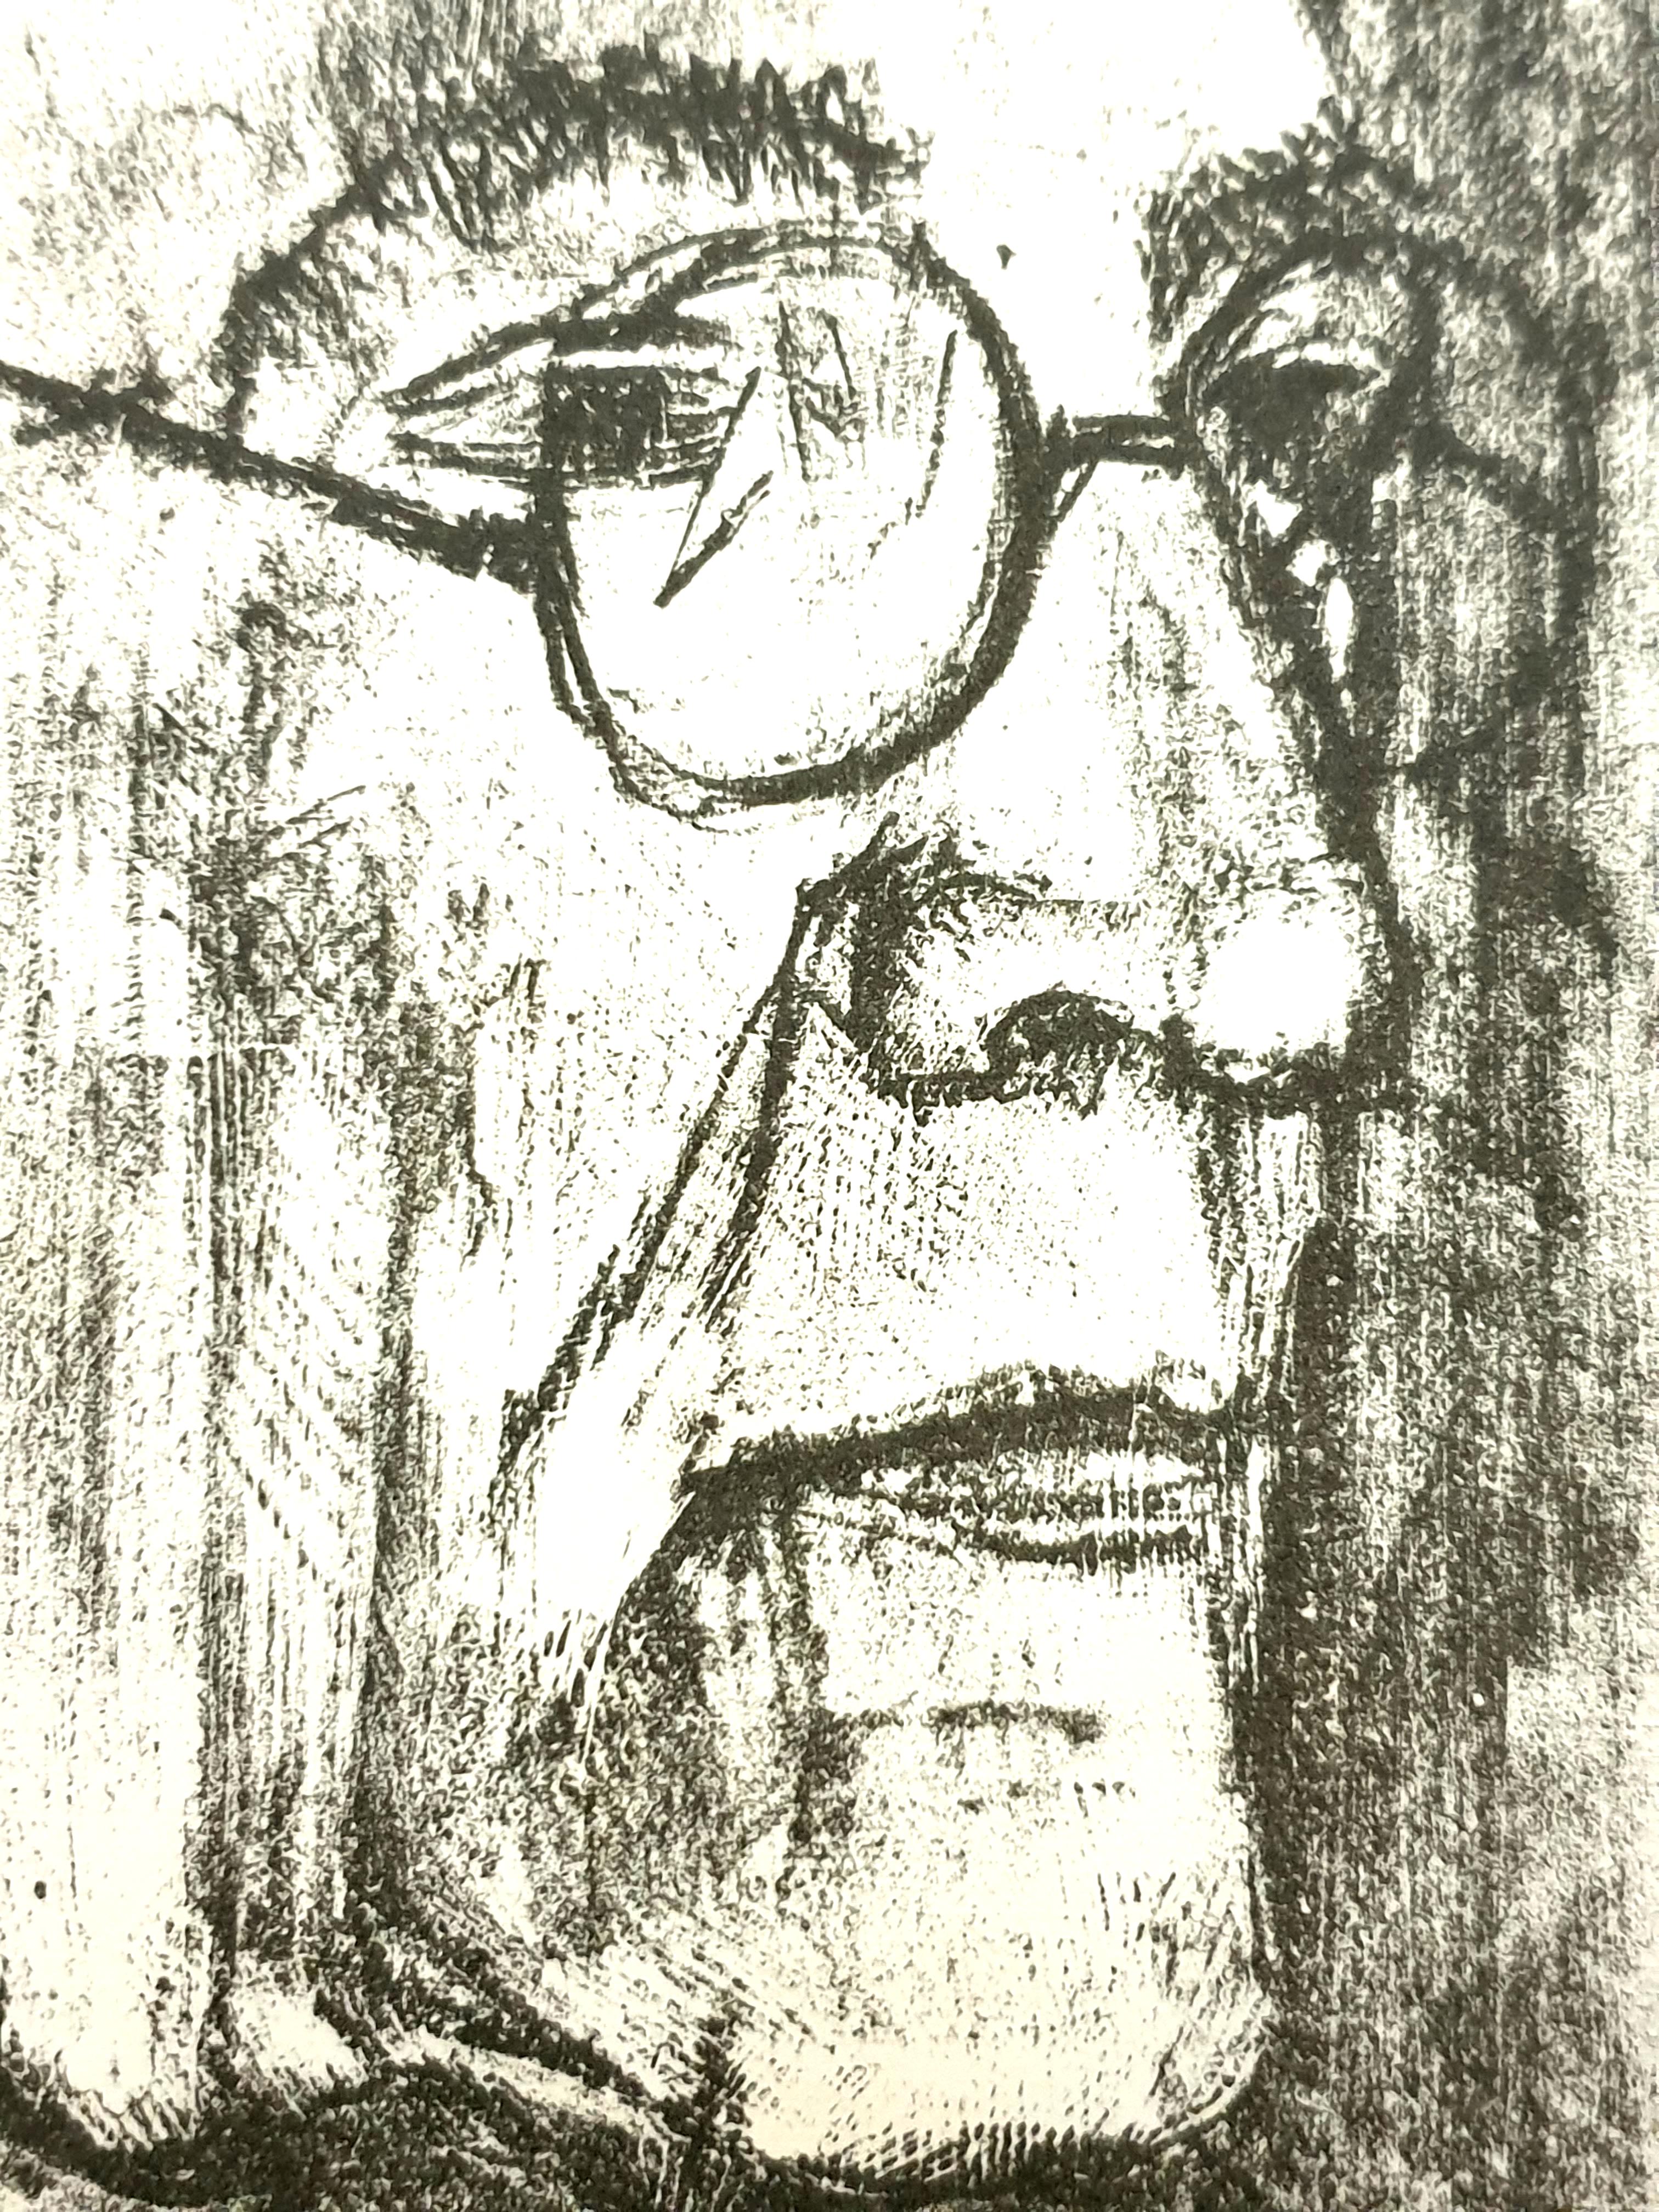 Andre Minaux - Porträt - Original Lithographie
1951
In der Platte signiert
Abmessungen: 22 x 16 cm 
Herausgeber: Sauret.
Frontispiz von The Counterfeiters
Unnummeriert wie ausgegeben